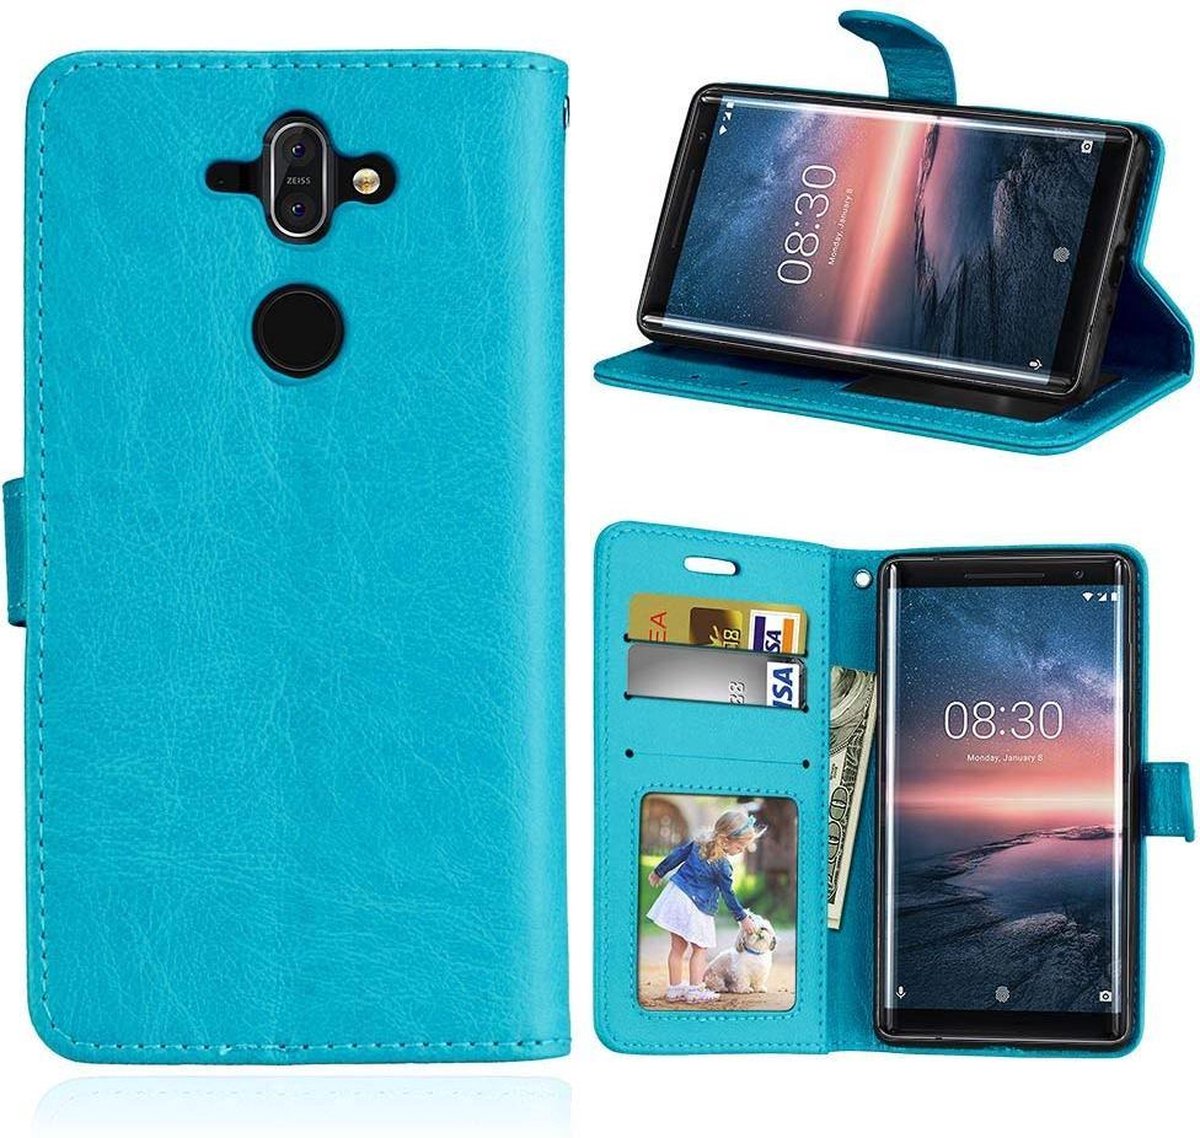 Nokia 8 Sirocco portemonnee hoesje - Turquoise